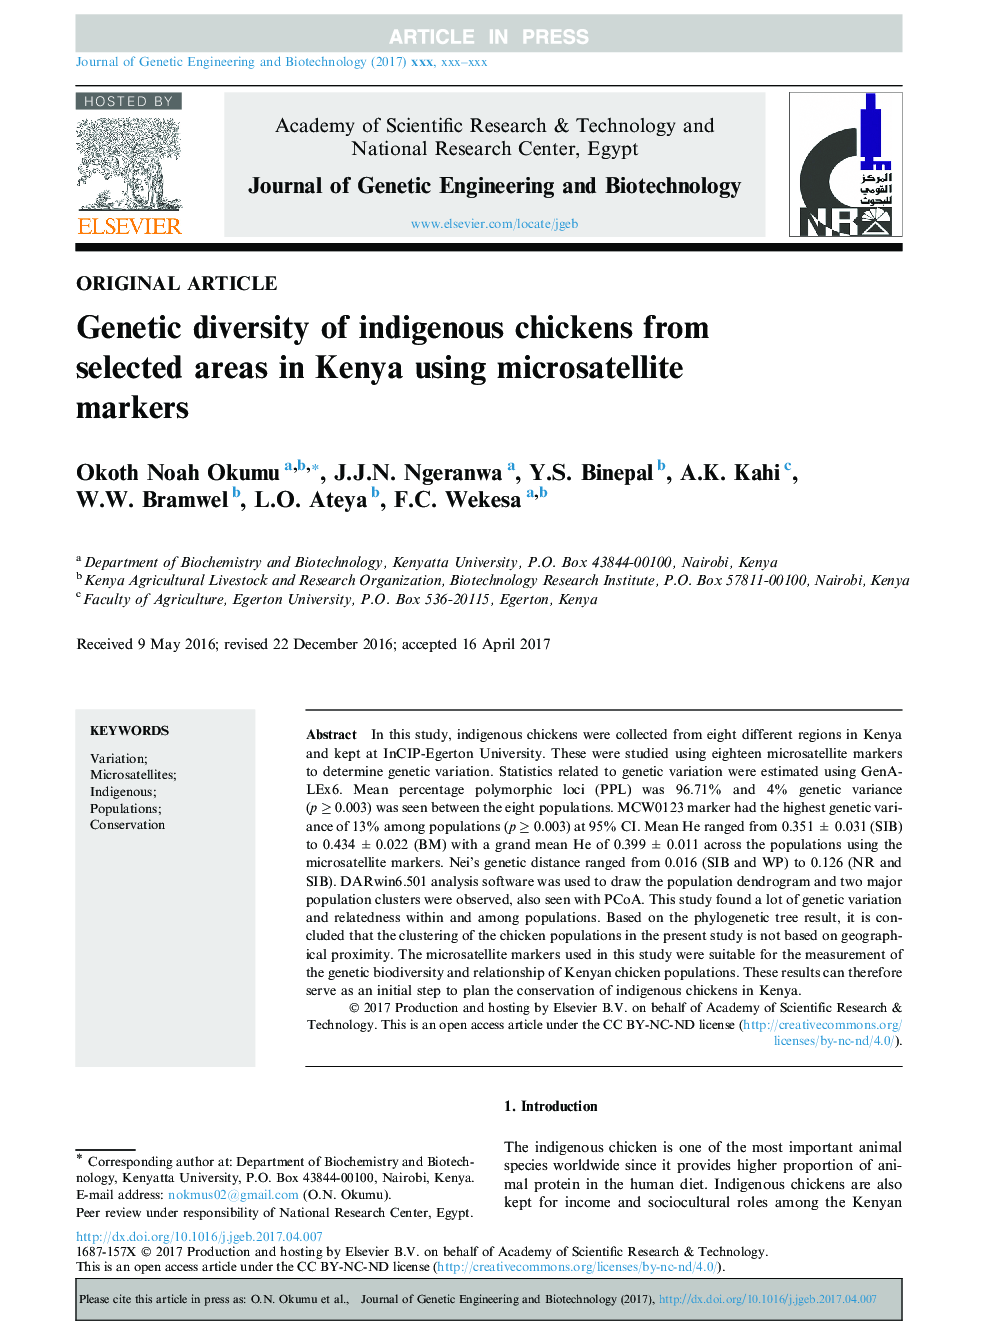 تنوع ژنتیکی جوجه های بومی از مناطق انتخاب شده در کنیا با استفاده از نشانگرهای ریزماهواره 